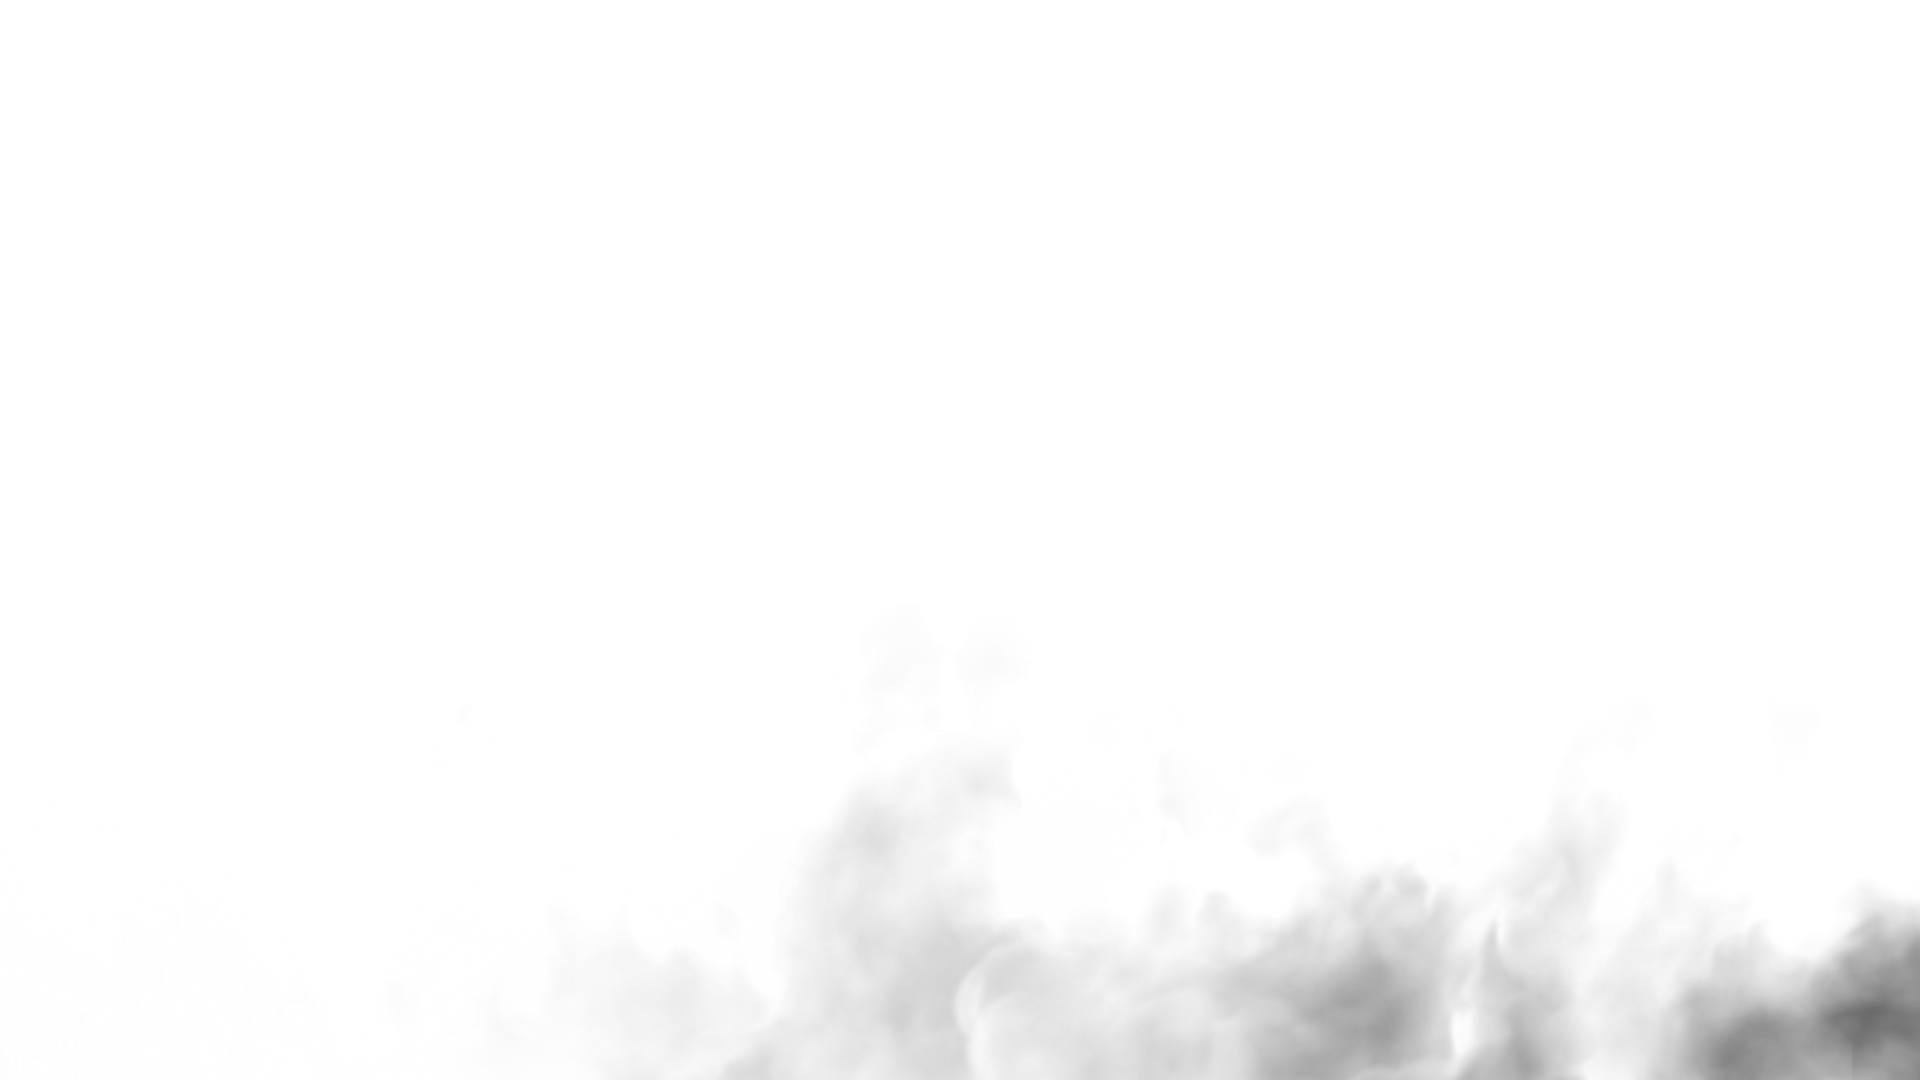 Khung cảnh ôm trọn trong sương mù thật tuyệt vời và kiến ​​thức trải nghiệm miễn phí với hình ảnh sương mù PNG cung cấp trên trang web miễn phí. Với nền trong suốt, bạn có thể tùy chỉnh các ảnh của mình bằng cách áp dụng chúng vào bất kỳ hình ảnh nào mà bạn muốn làm nổi bật.